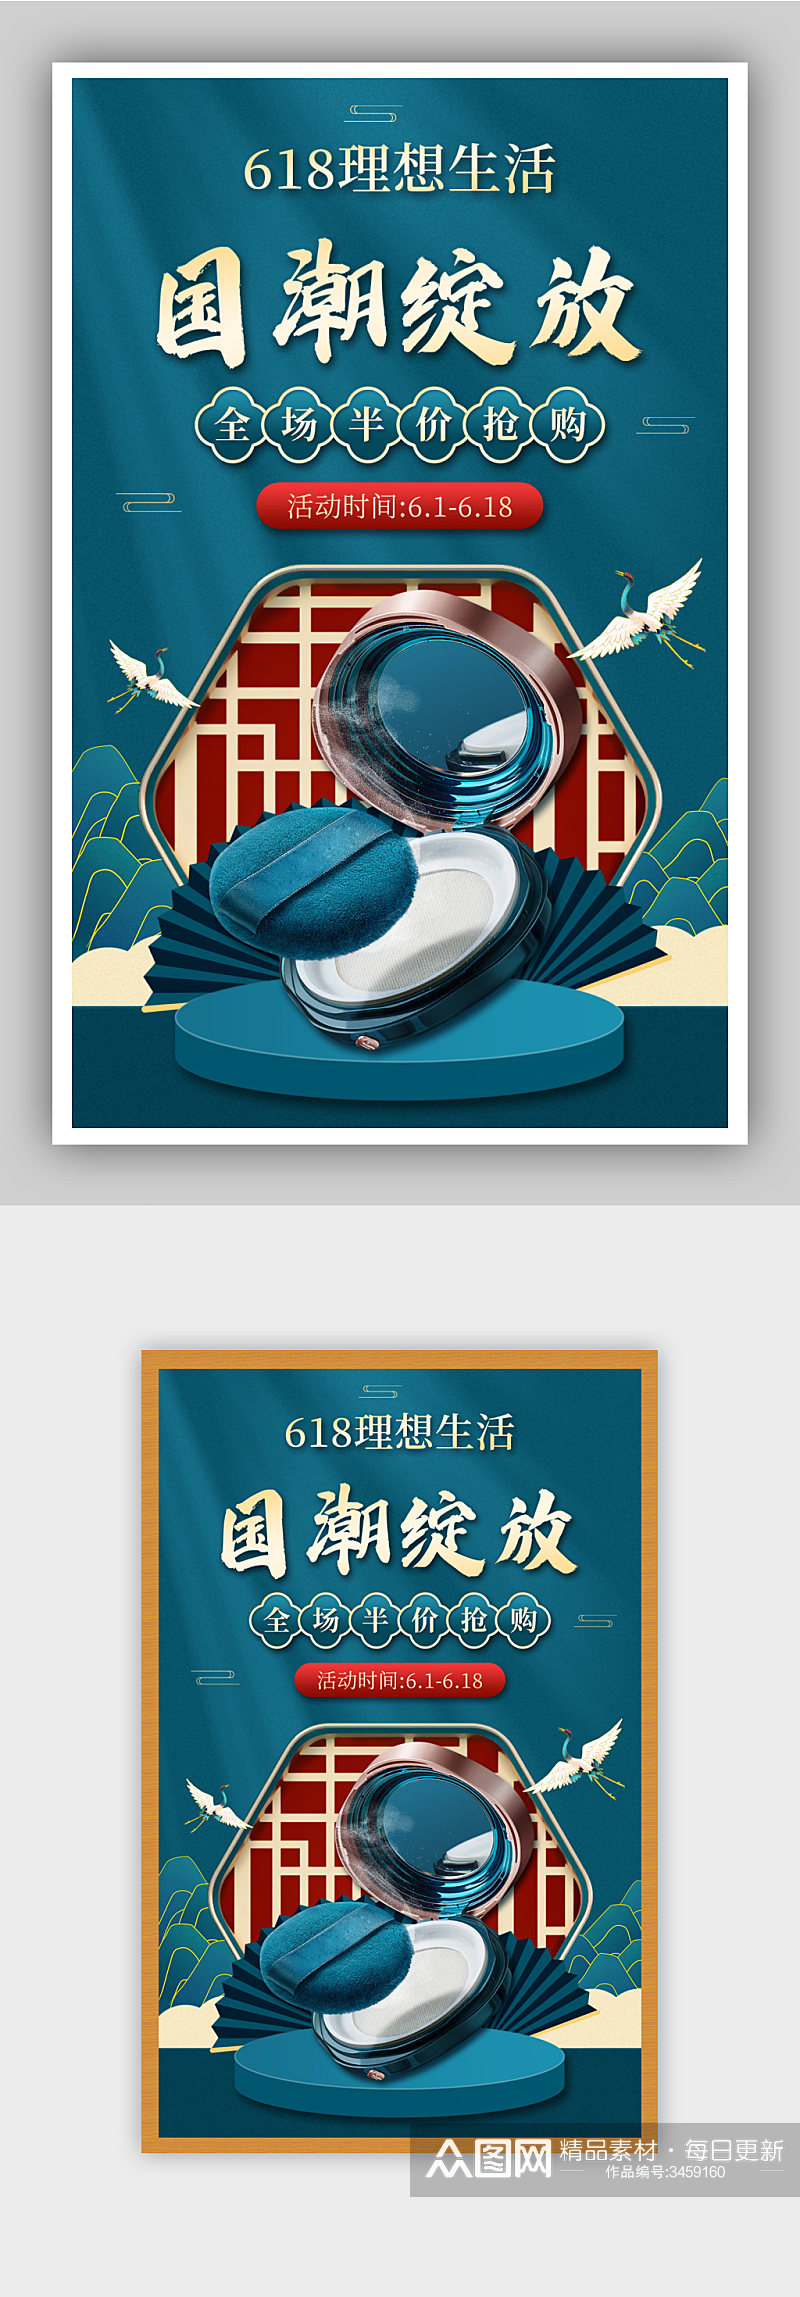 蓝色简约中国风美妆护肤品促销海报素材